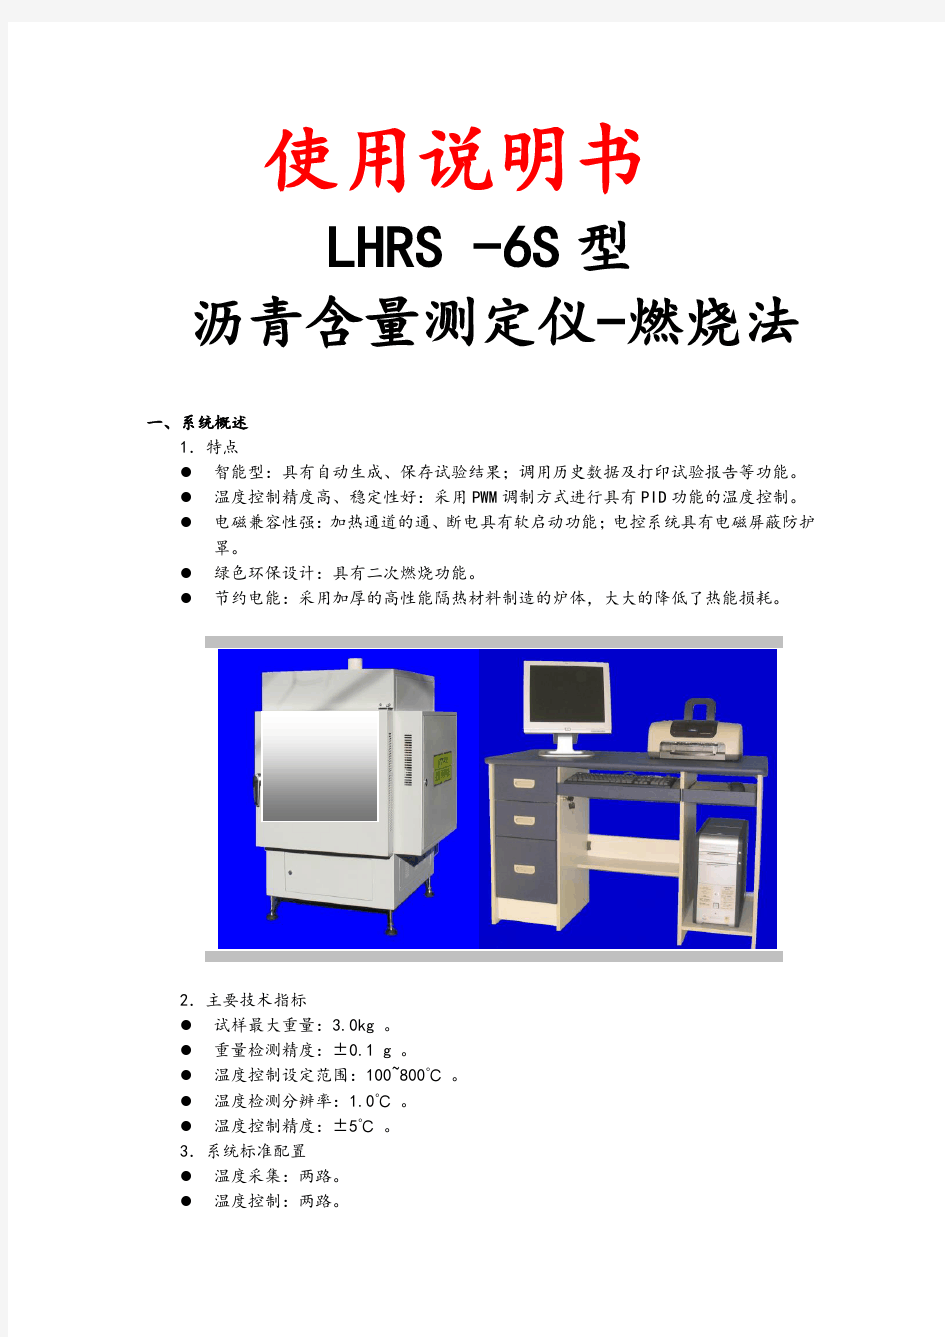 沥青含量测定仪-燃烧法-使用说明书-LHRS-6S